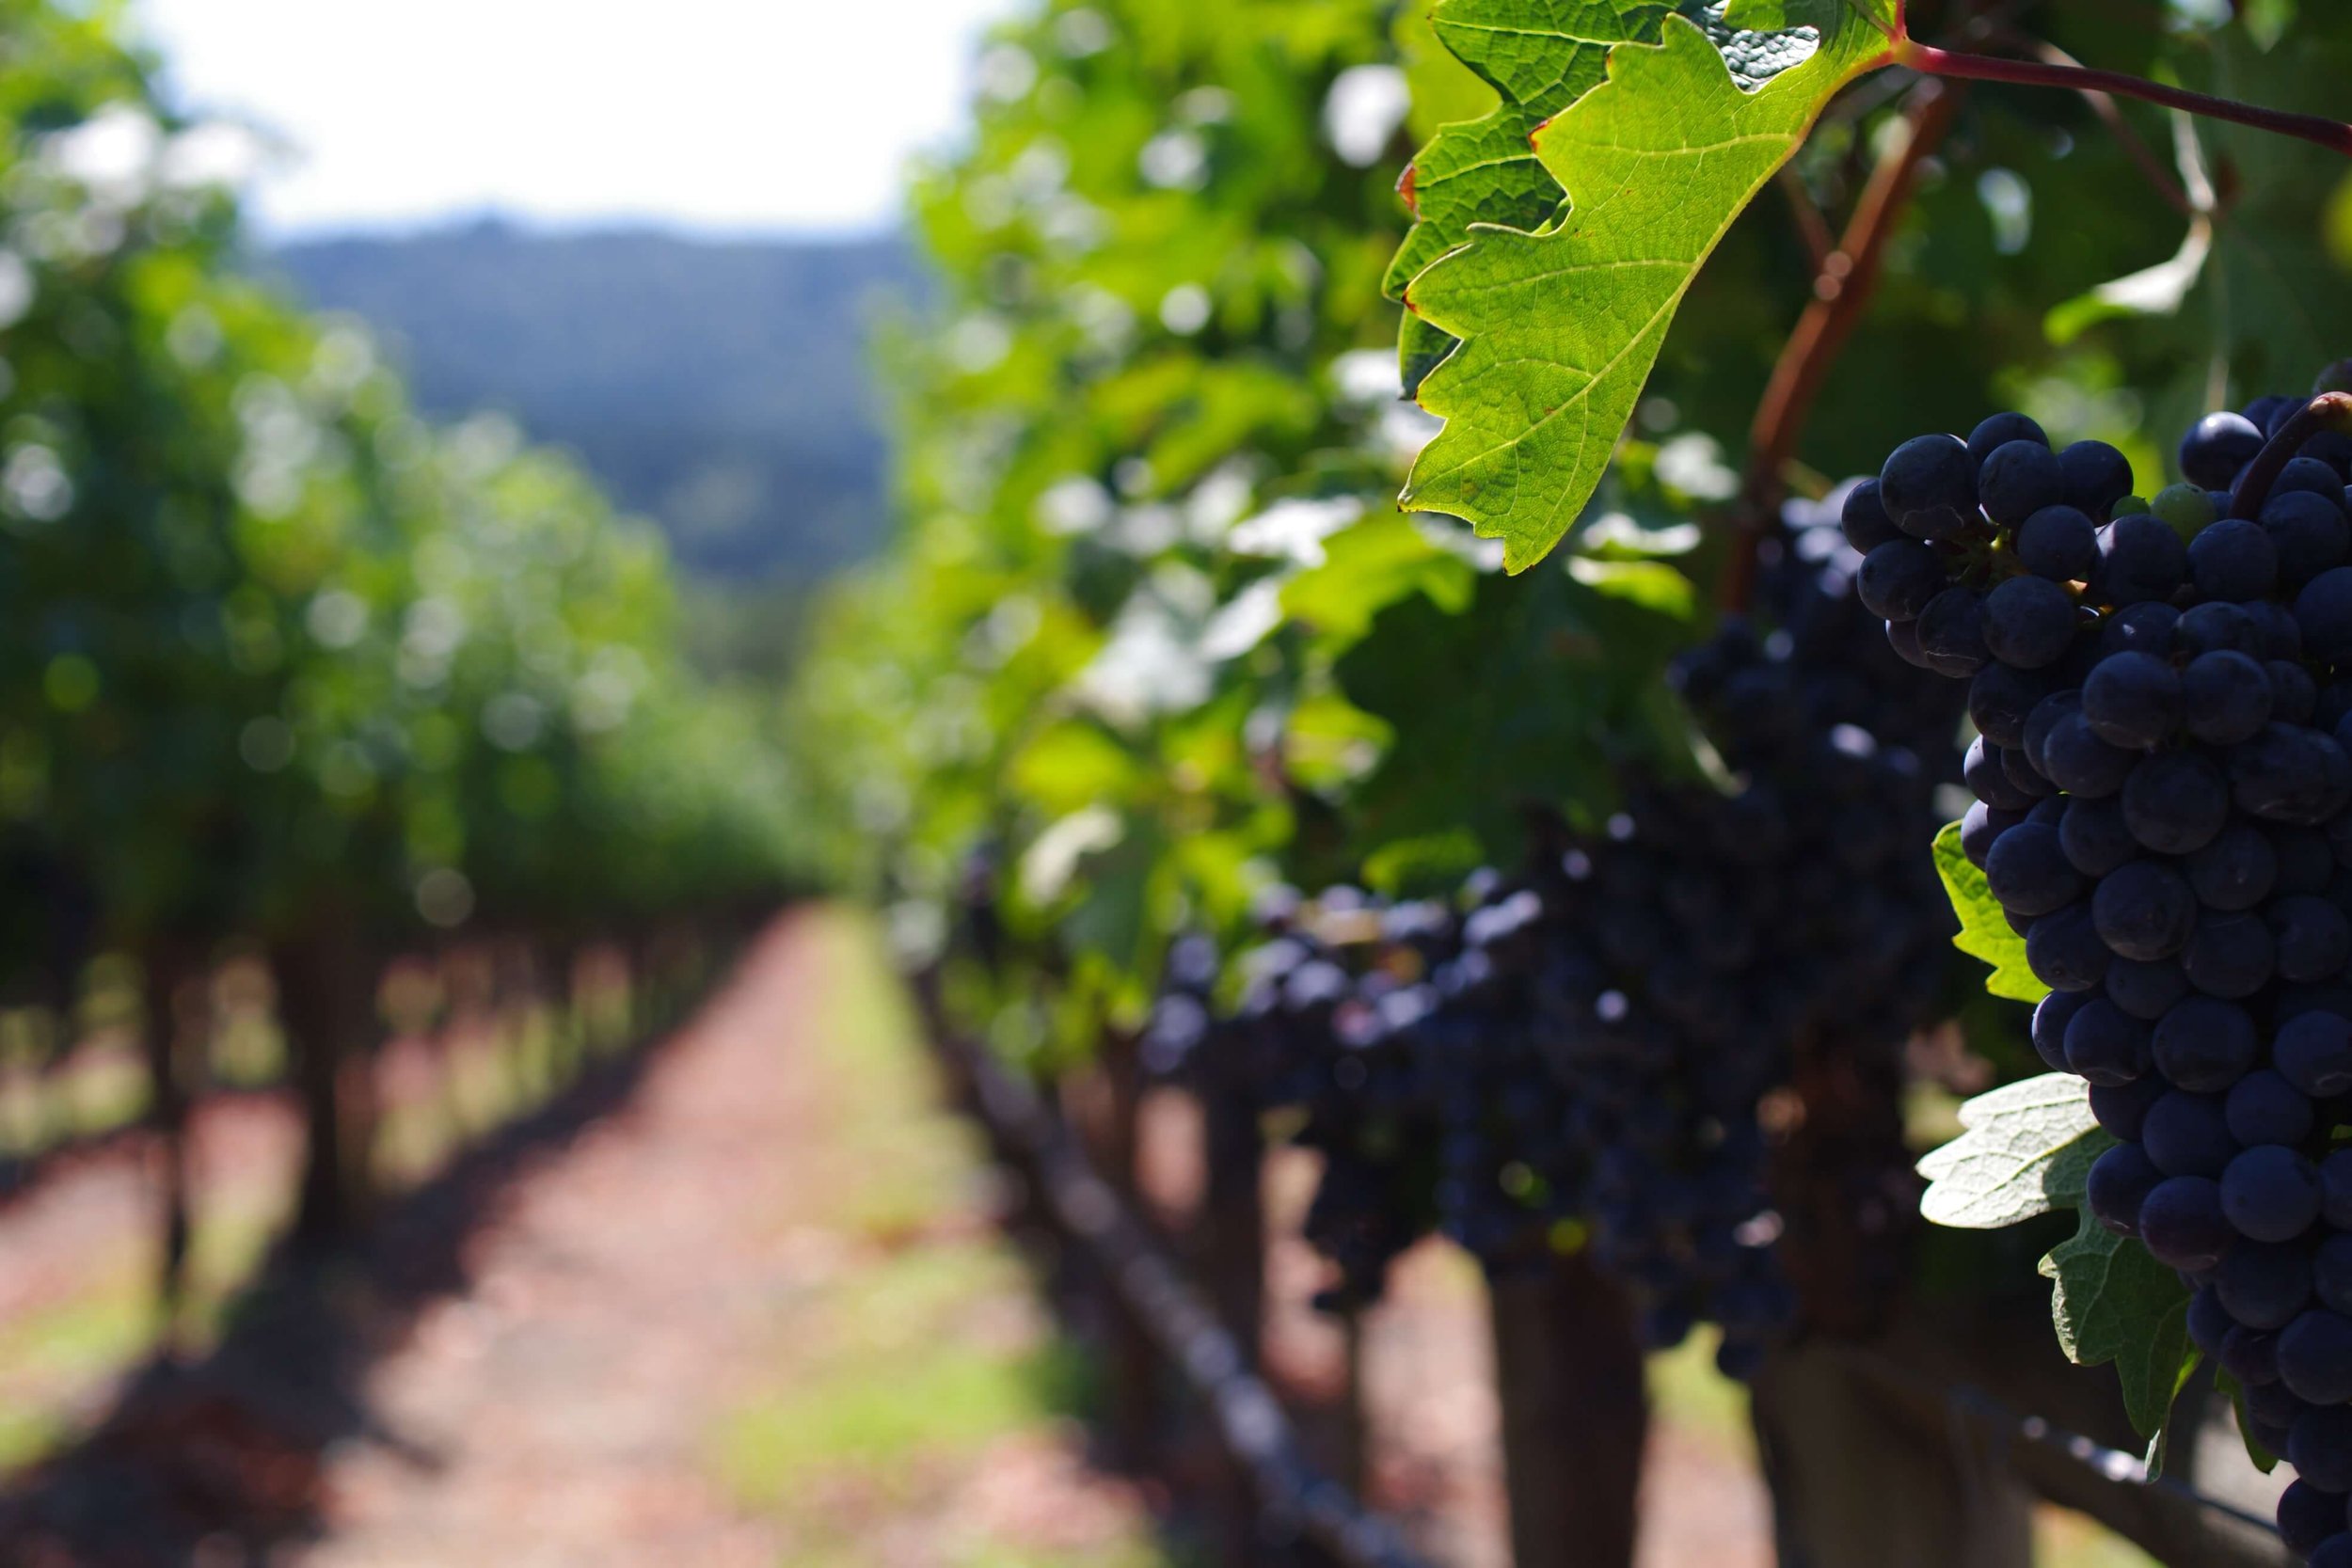 Napa Valley Vineyard - Grapes up close